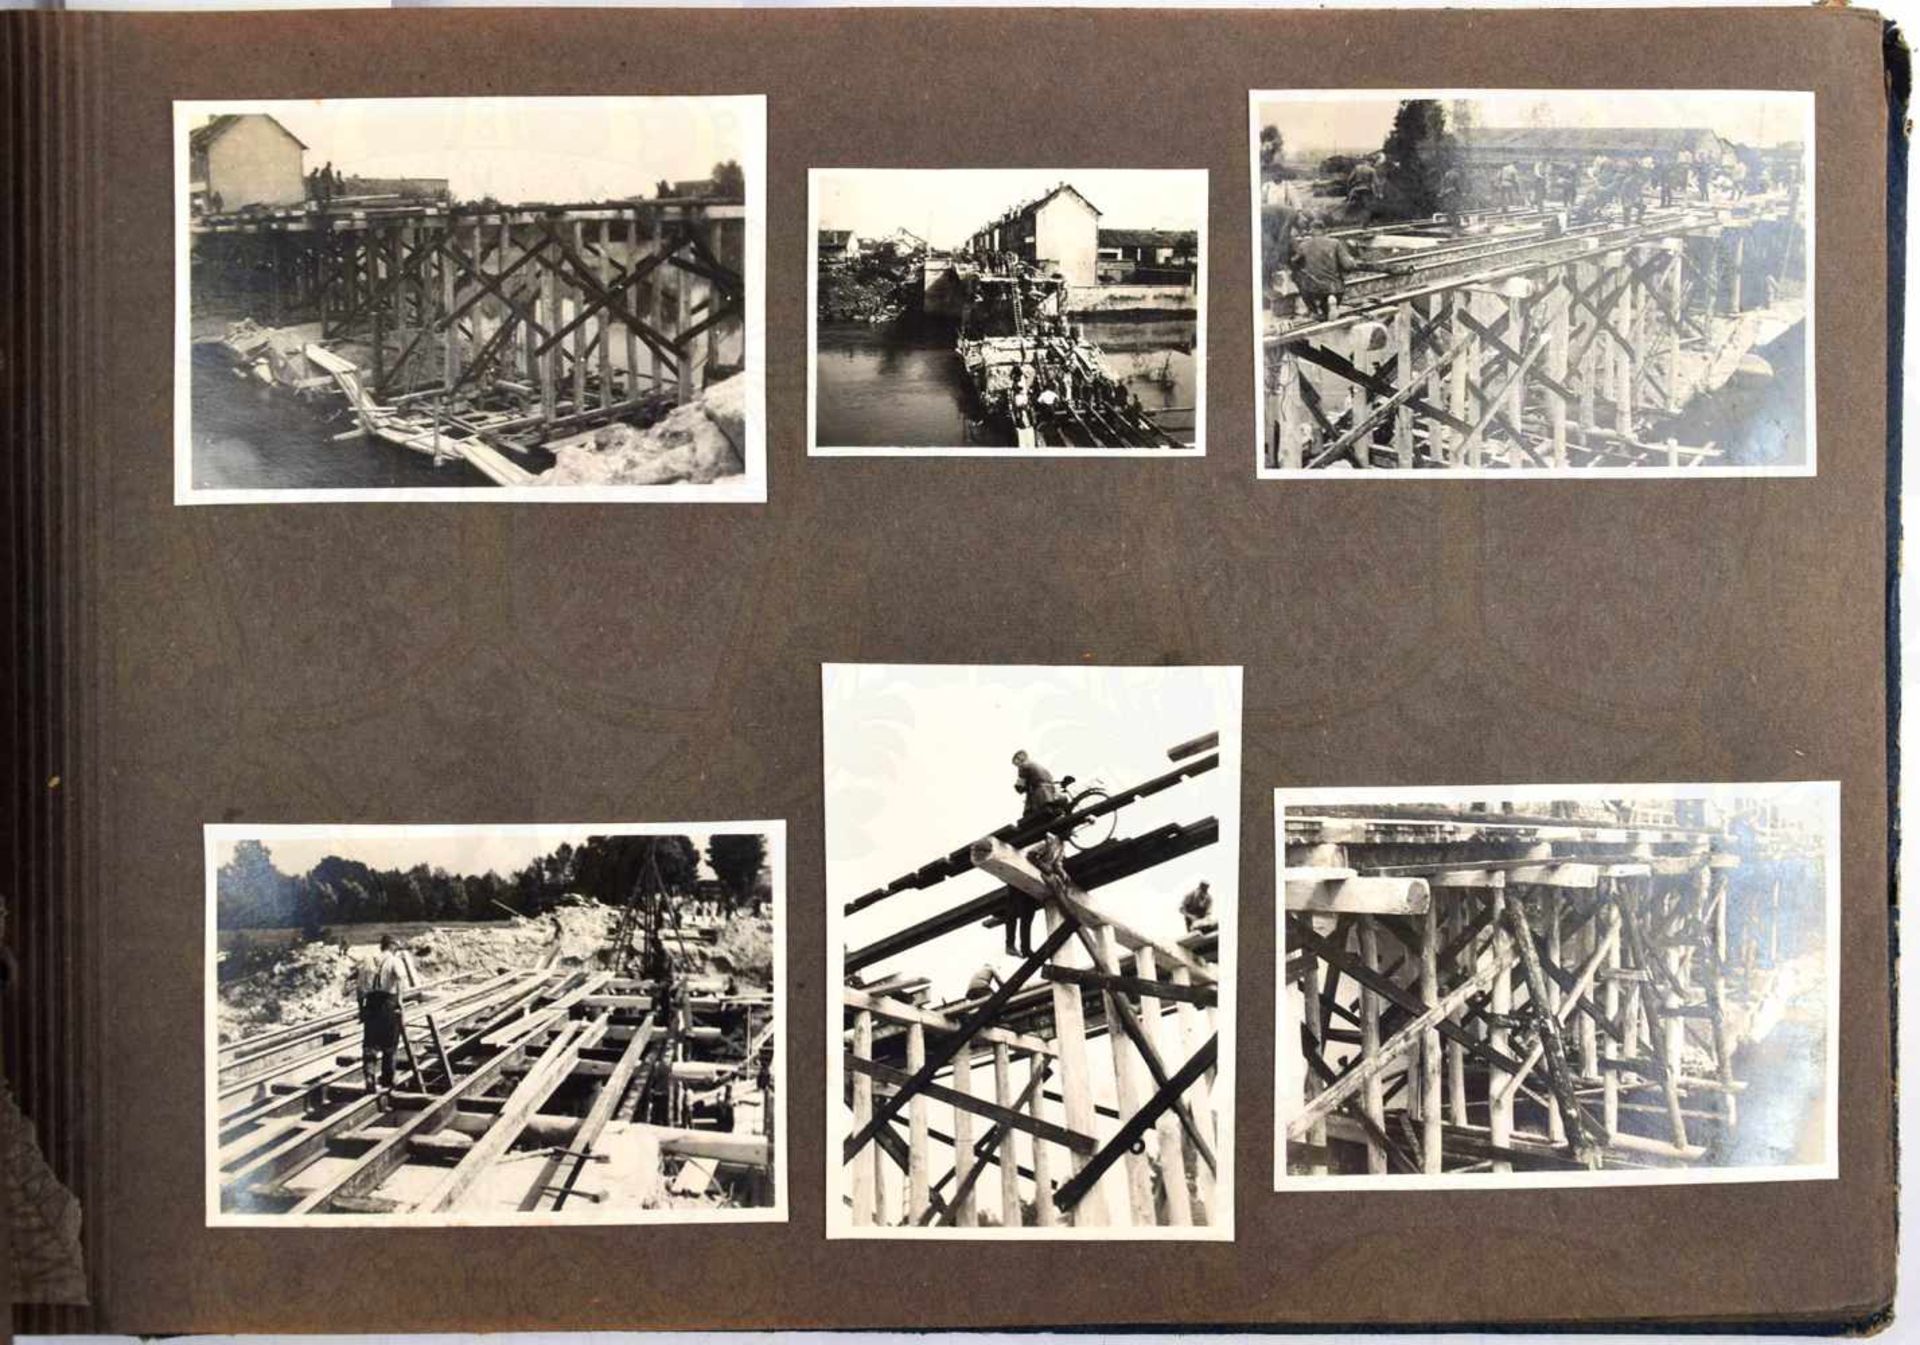 FOTOALBUM, m. 97 Fotos, meist Brückenbau in Frankreich, Abtragen zerst. Straßen- u. Bogenbrücken,